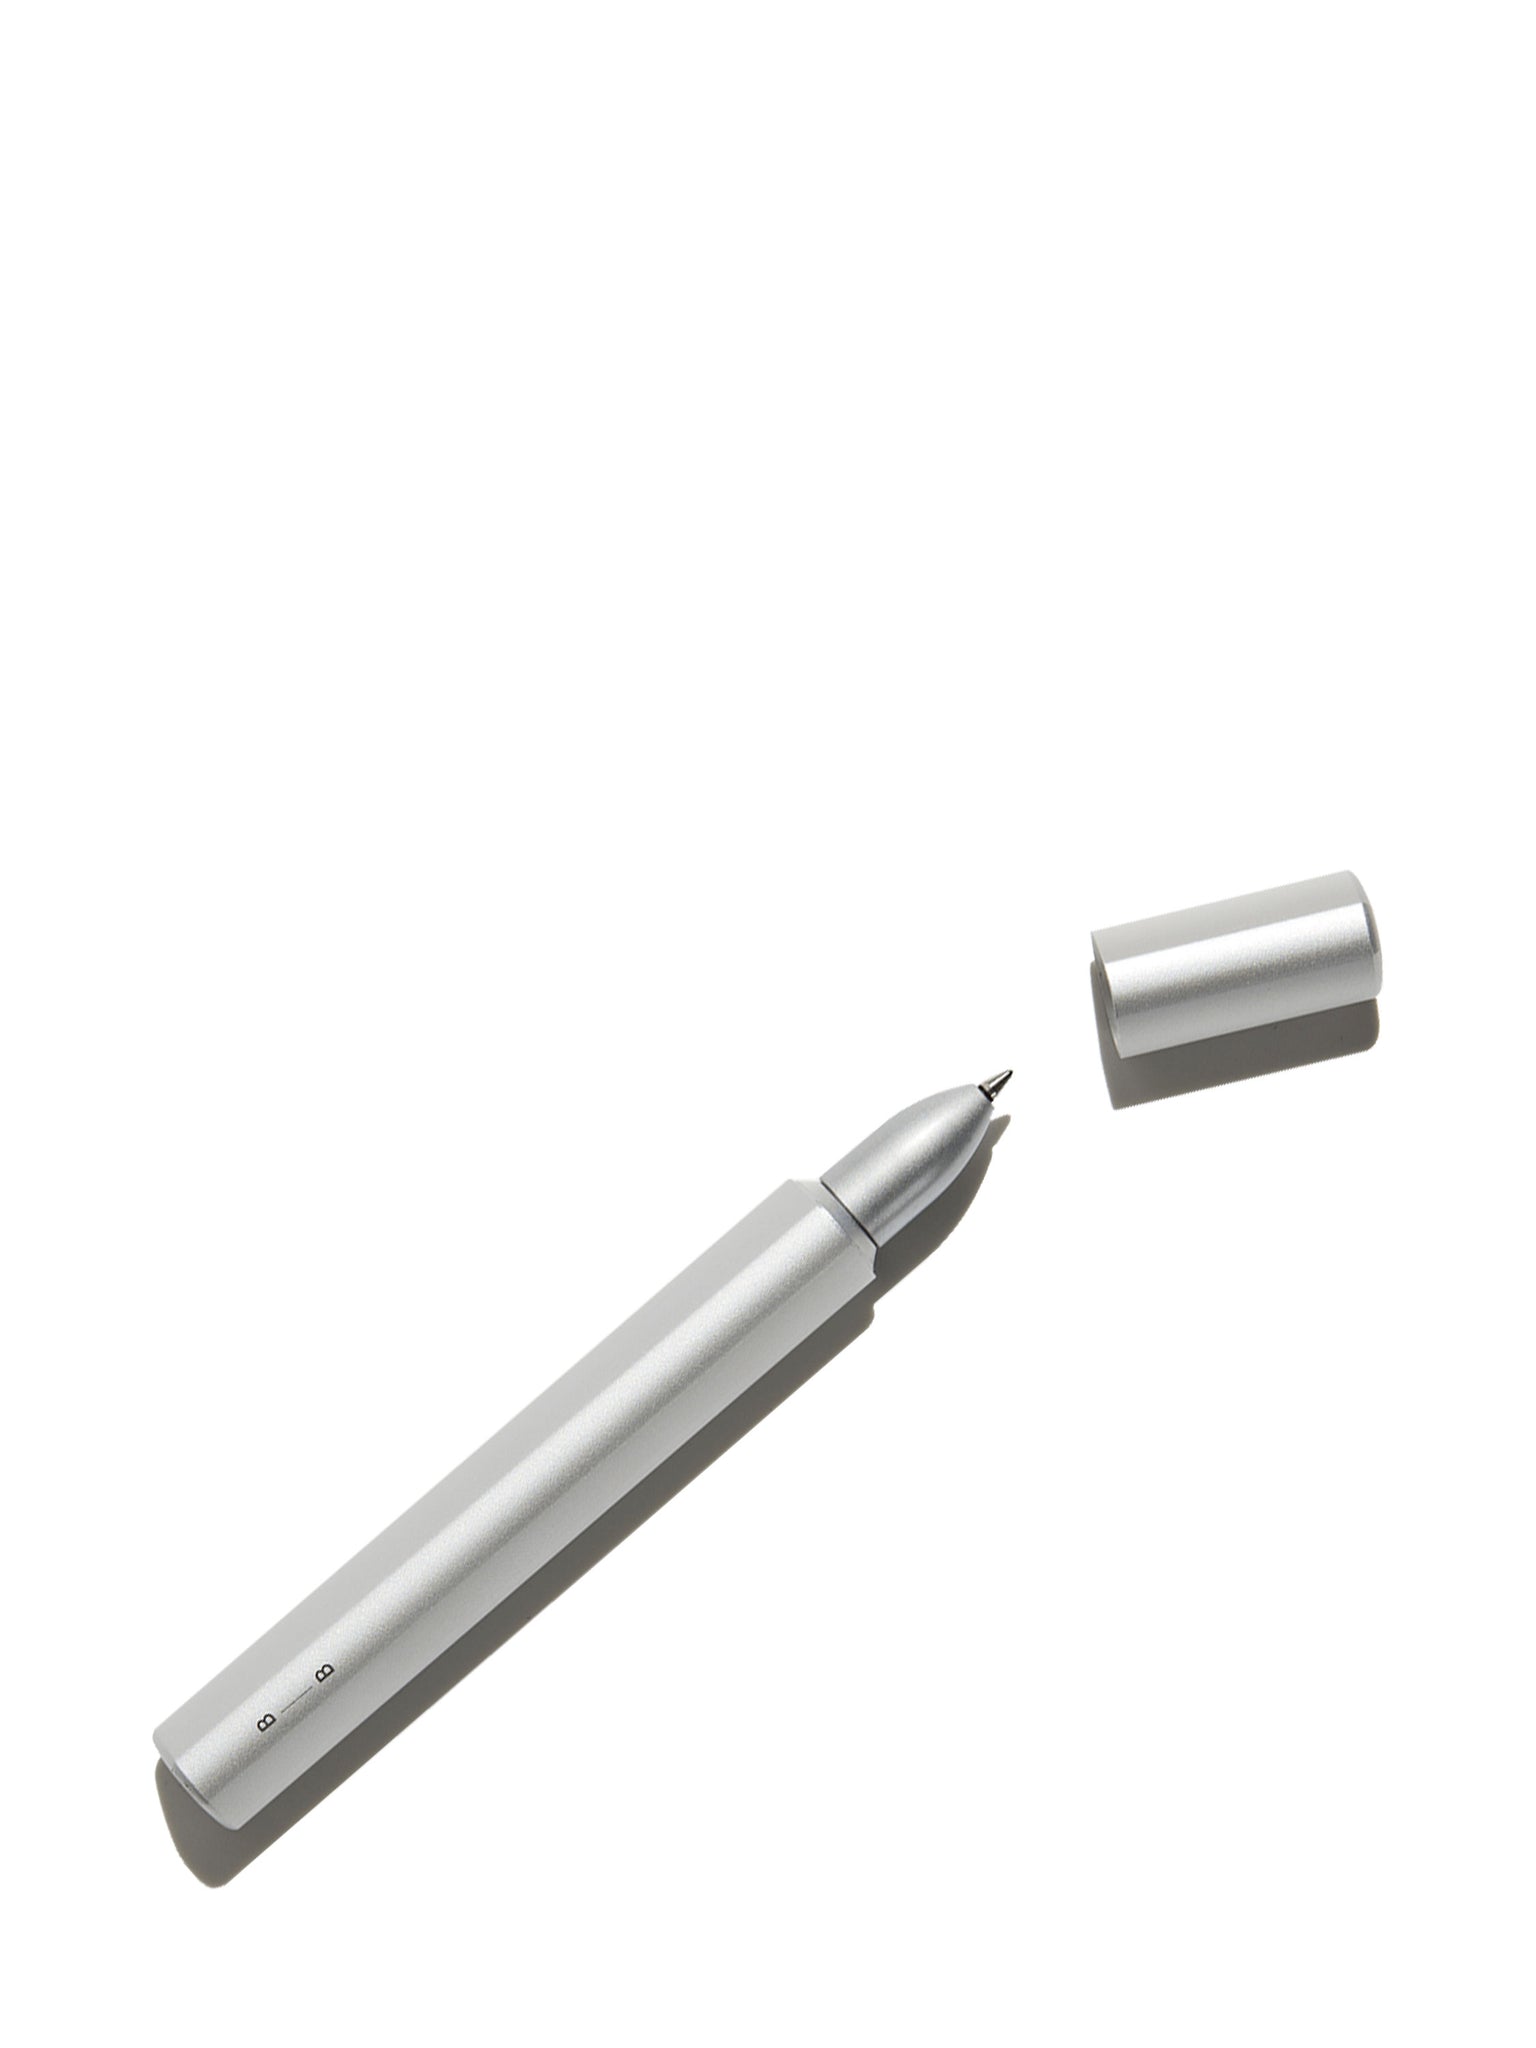 Before breakfast annodised beadblast aluminium premium rollerball pen in silver